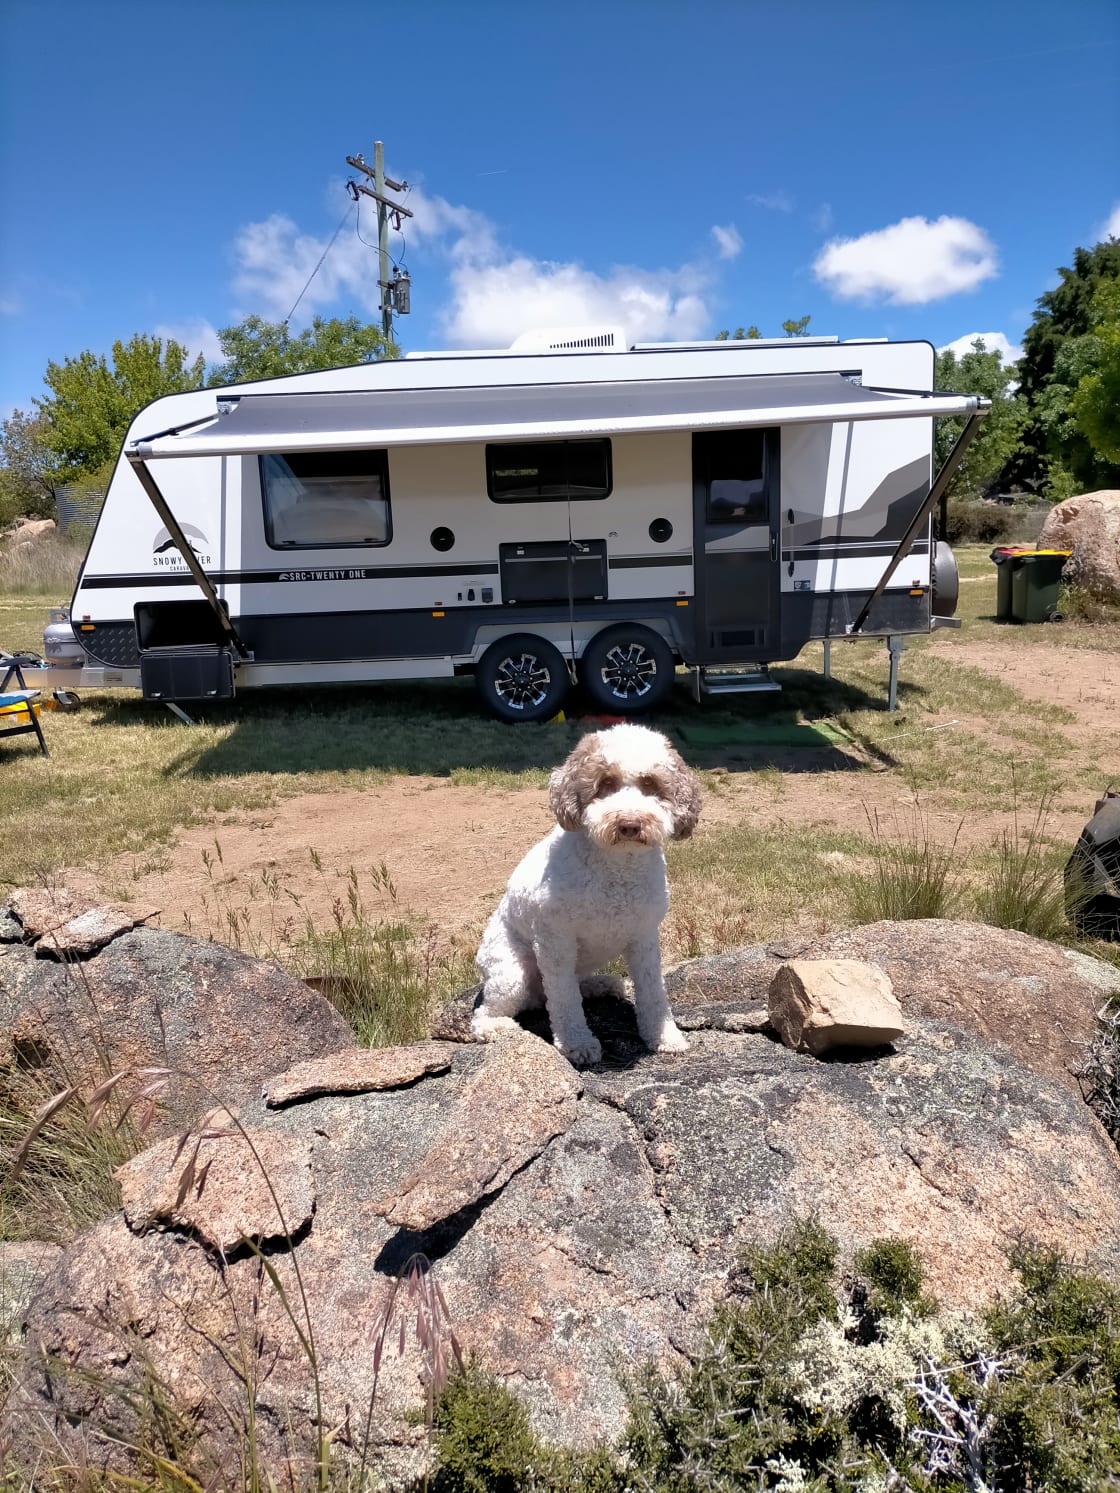 A dog friendly camp